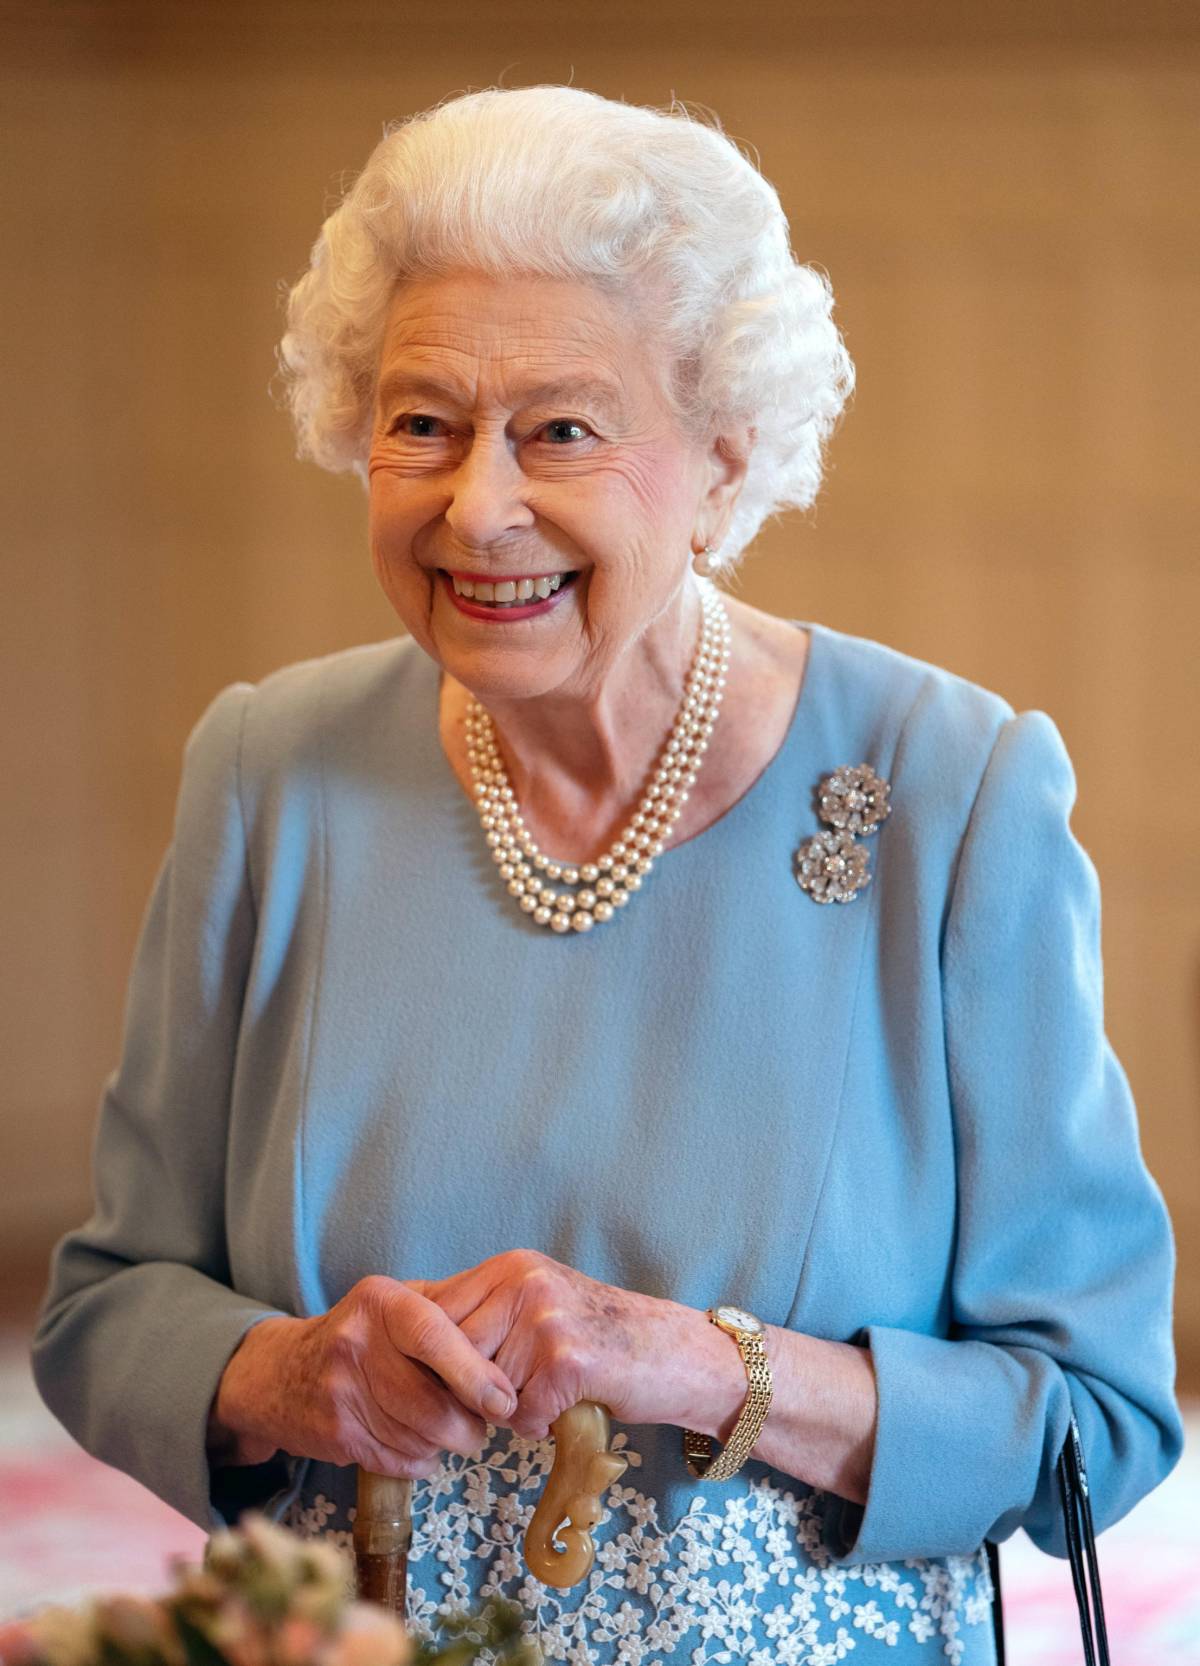 La regina Elisabetta di nuovo in pubblico senza bastone - ilGiornale.it